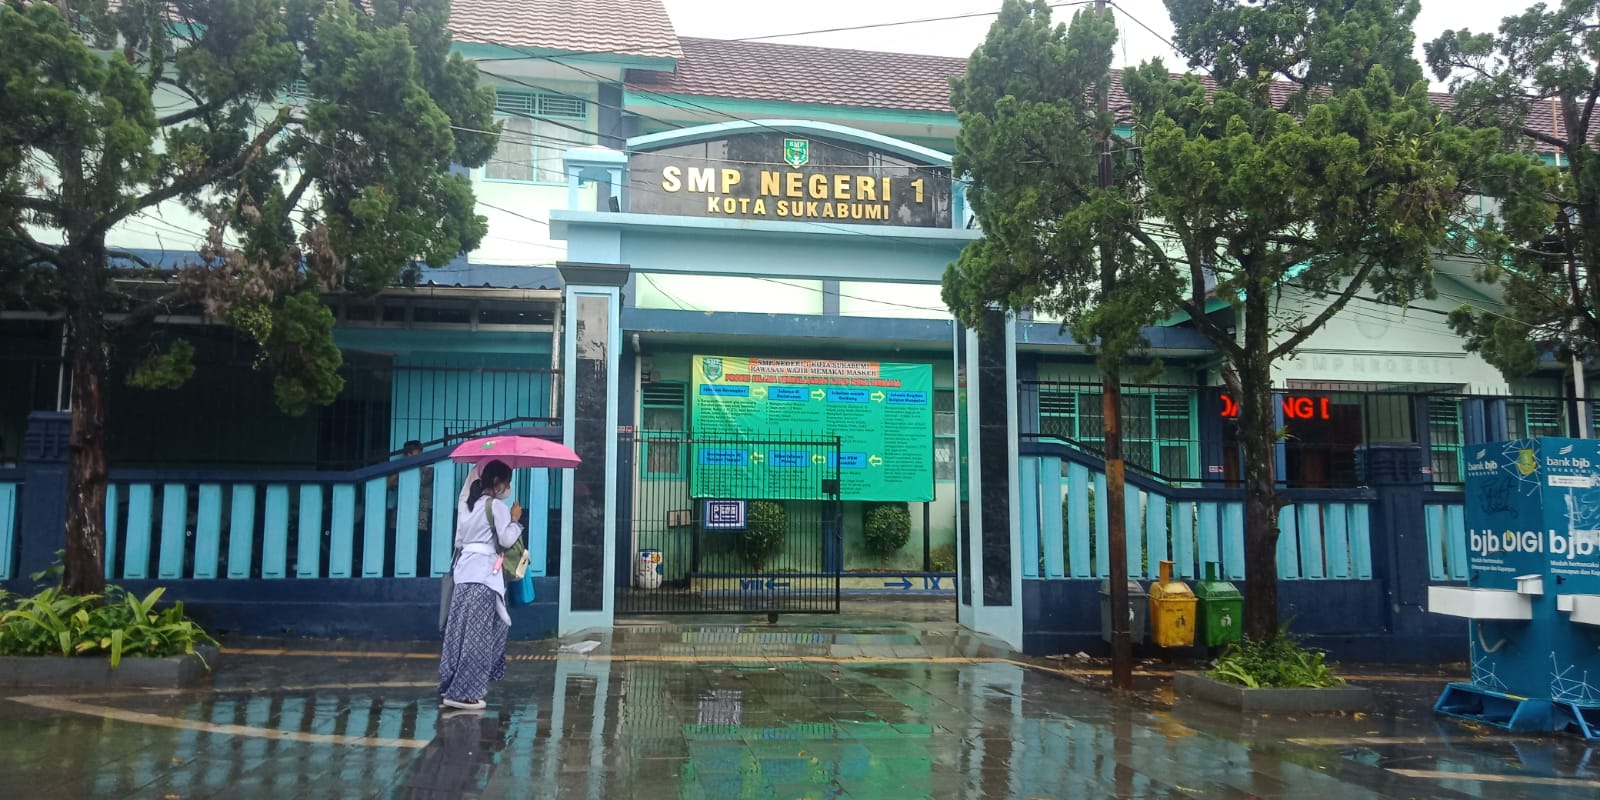 SMP Negeri 1 Kota Sukabumi